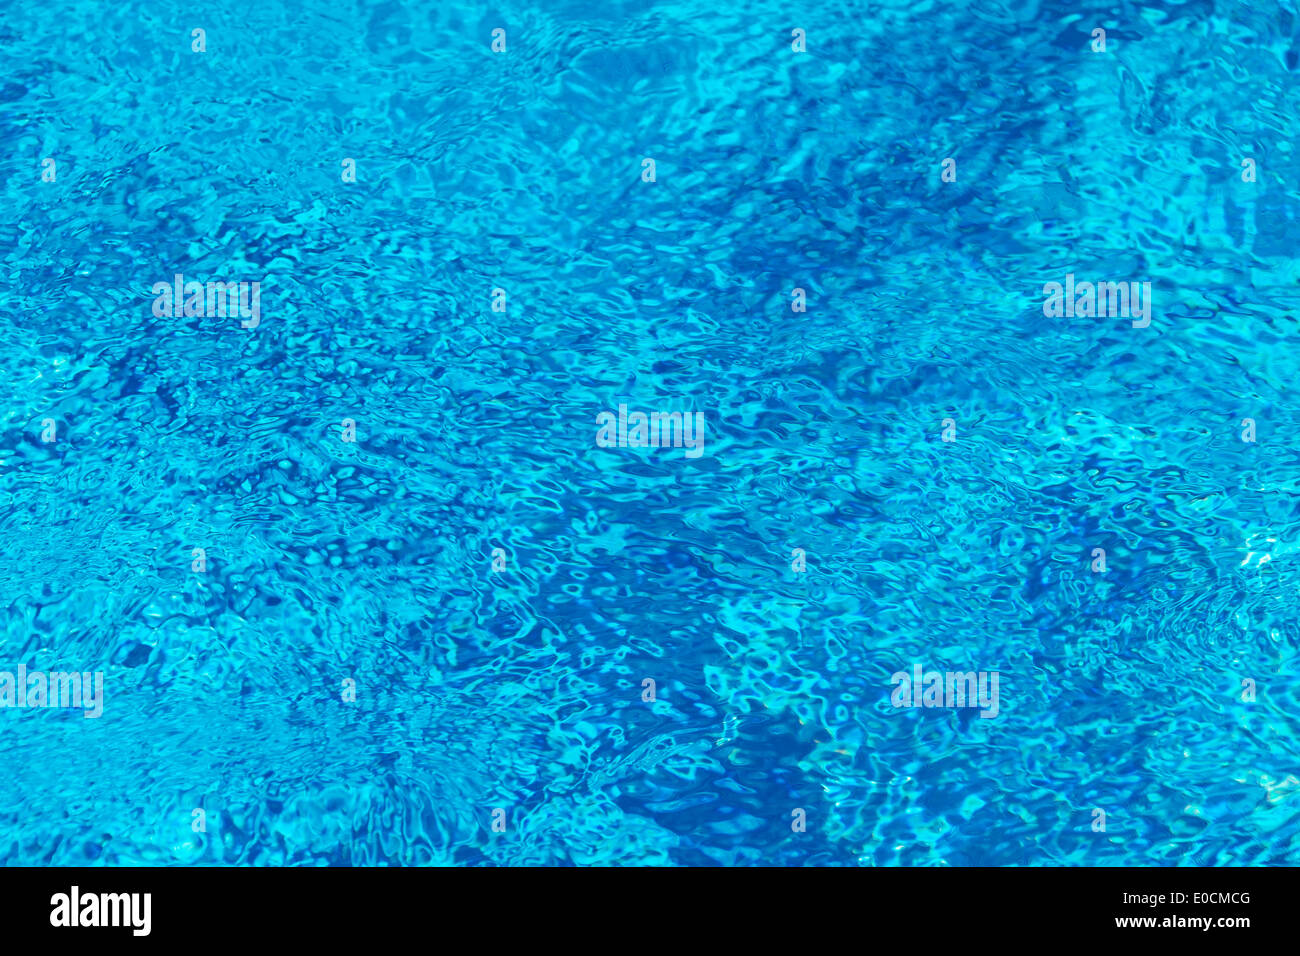 Las azules aguas de superficie en una piscina como fondo, Die blaue Wasseroberflaeche en einem Schwimmbad als Hintergrund Foto de stock